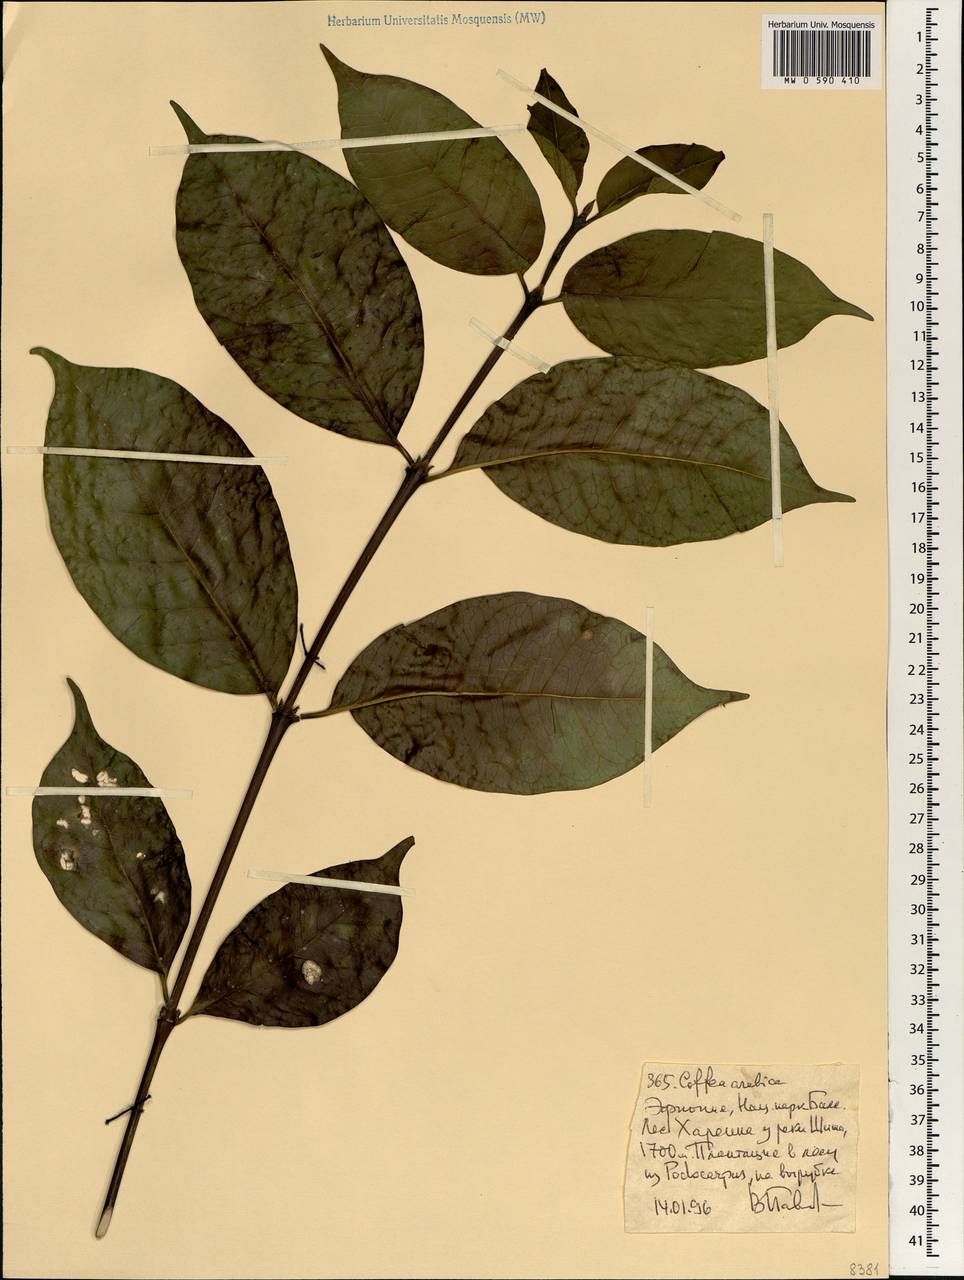 Coffea arabica L., Africa (AFR) (Ethiopia)